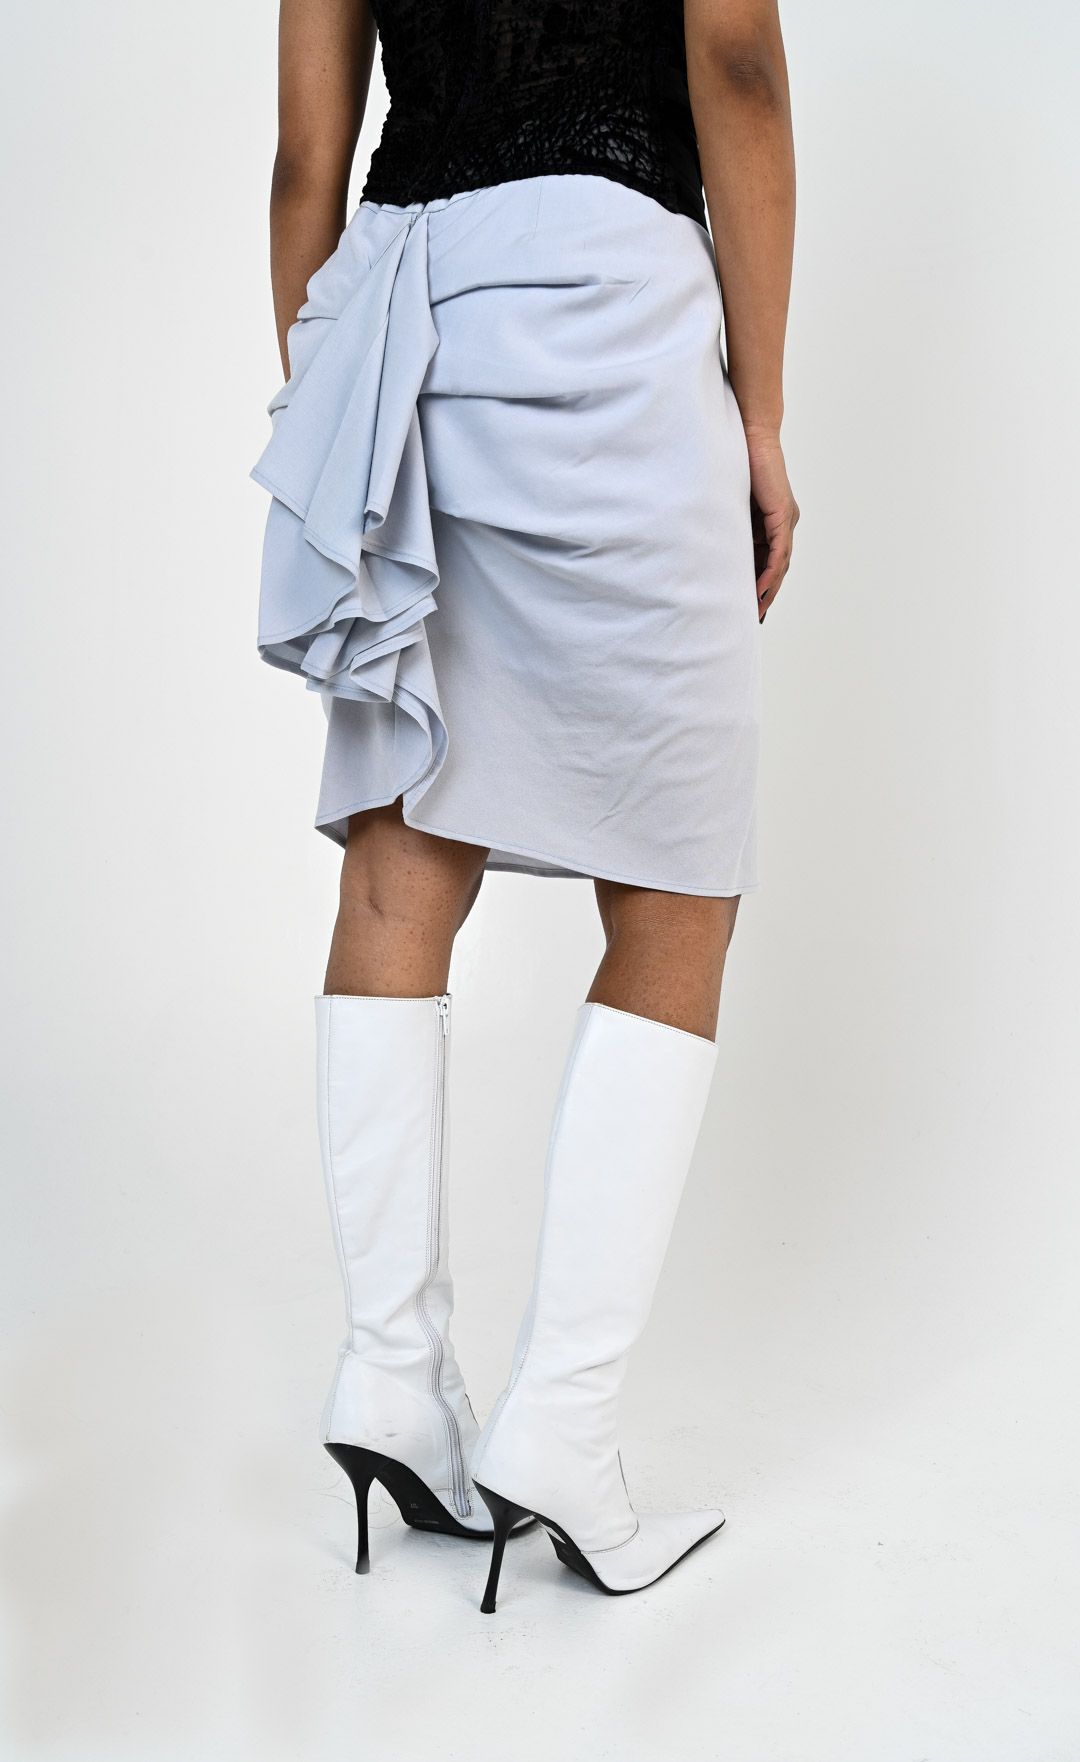 Vivienne Westwood Ruffle Skirt - 1